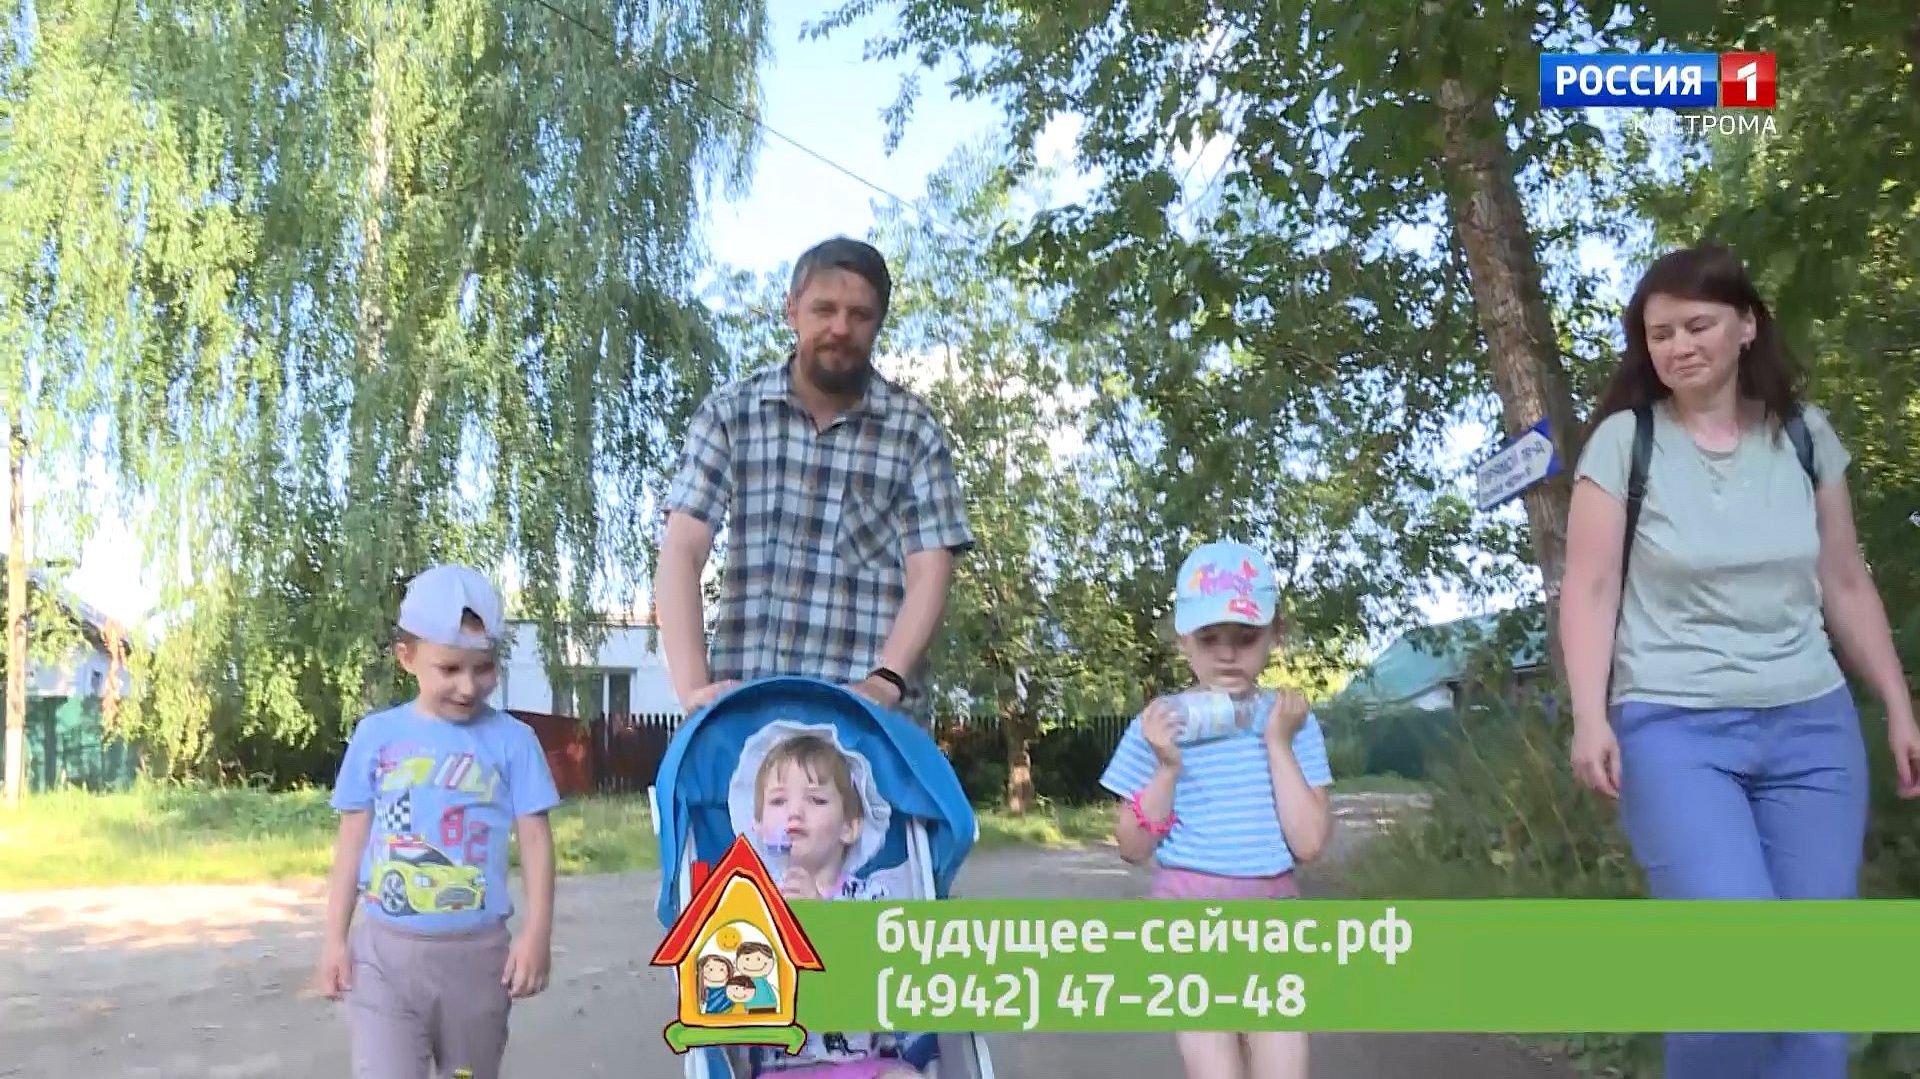 Детей попавшей в беду мамы на время приютила семья из Костромы